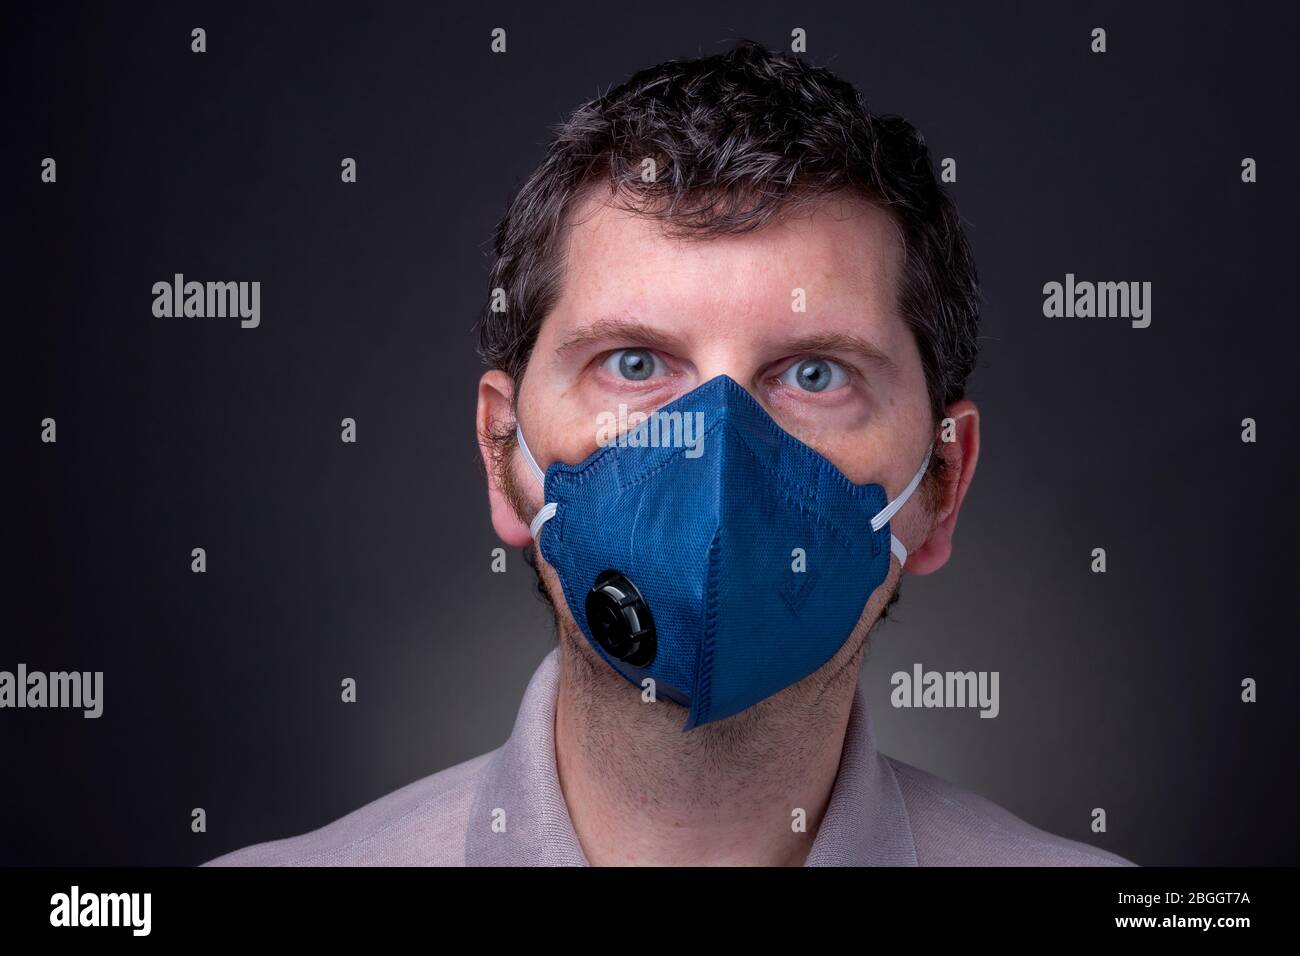 Kaukasischer Rüde mit dunkelblauer N95 Atemschutzmaske. Studio Low-Key-Profil des Mannes mit weit offenen stressigen blauen Augen und verwirrten Blick Stockfoto